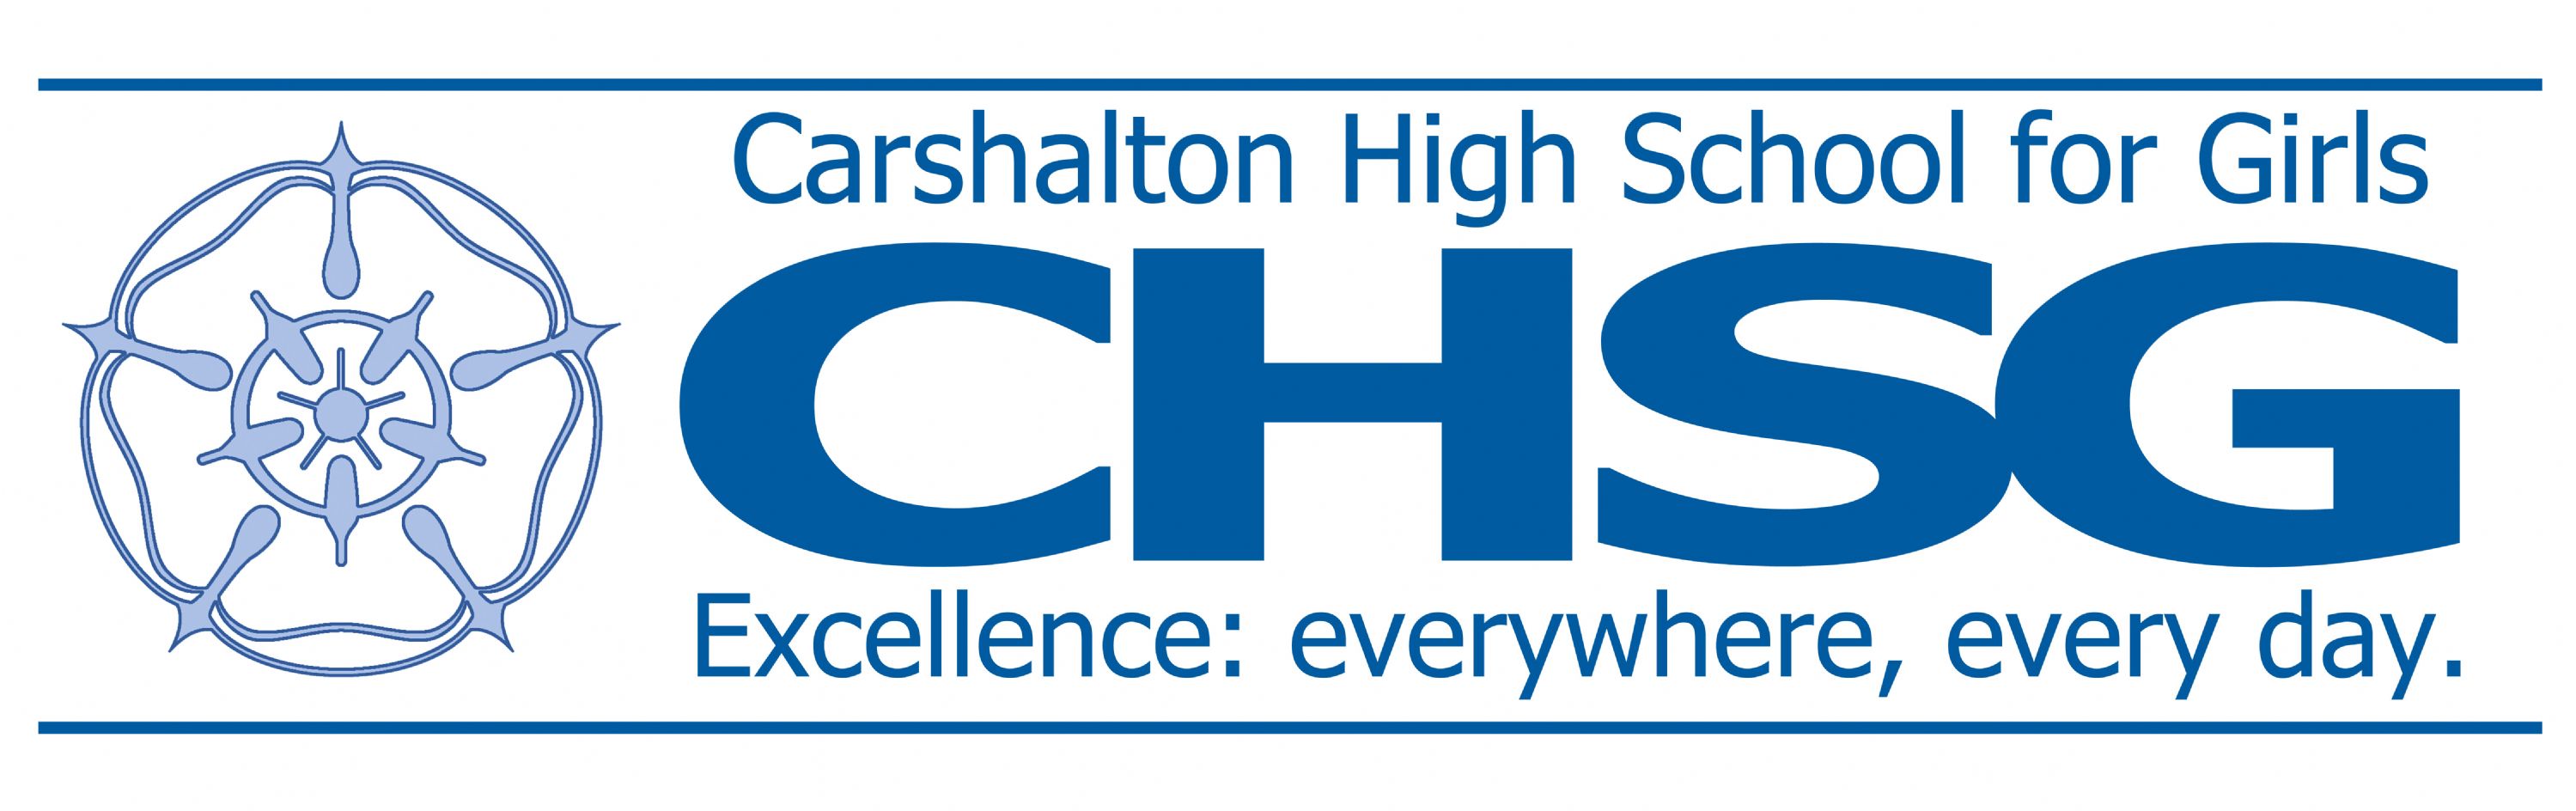 Carshalton High School for Girls logo